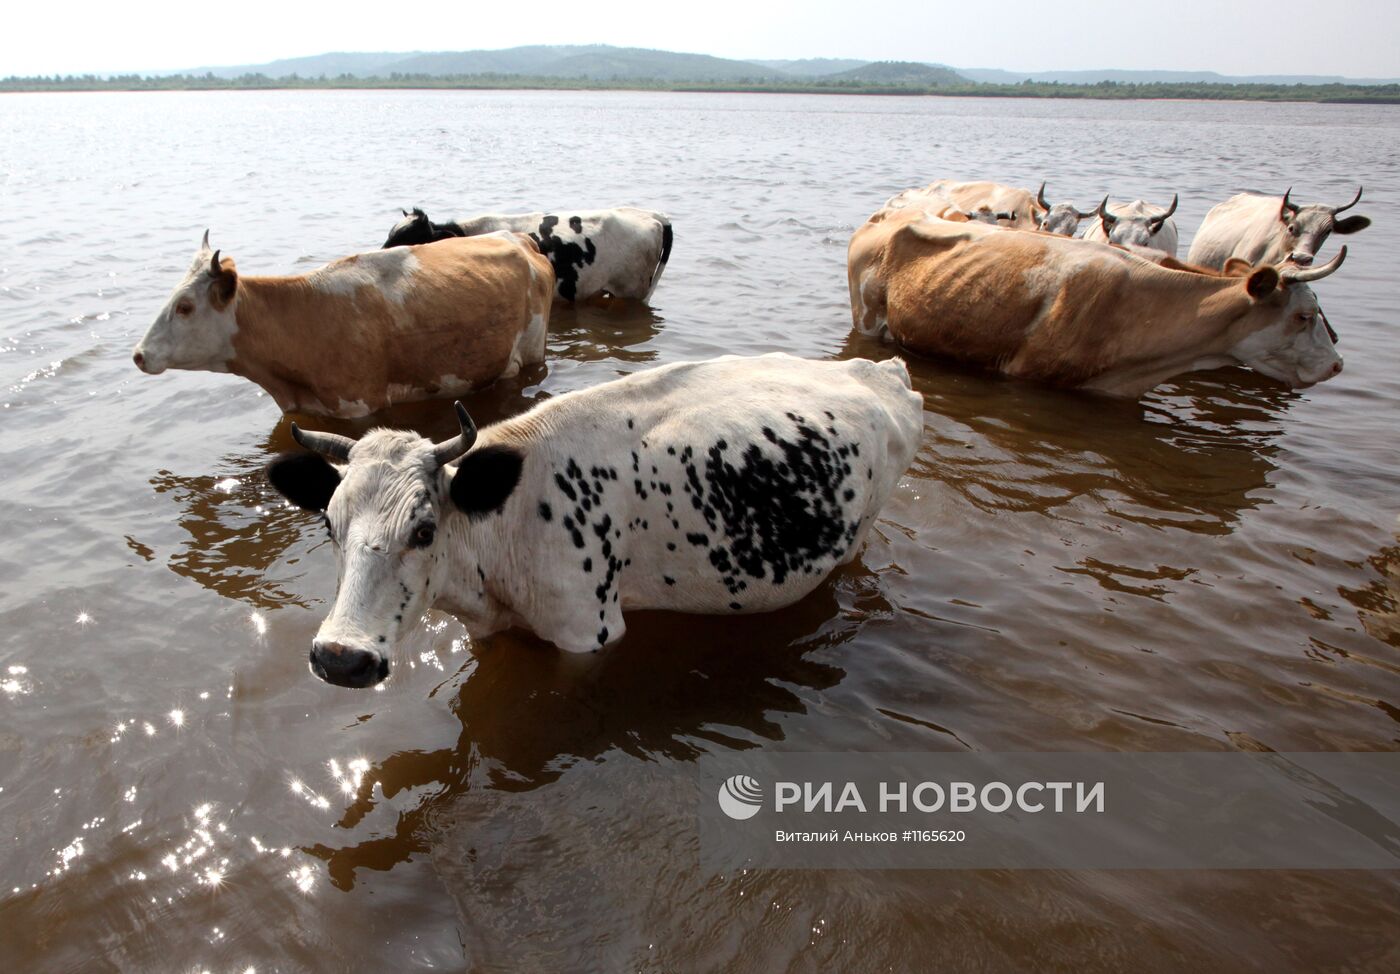 Стадо коров спасается от жары в реке Зея